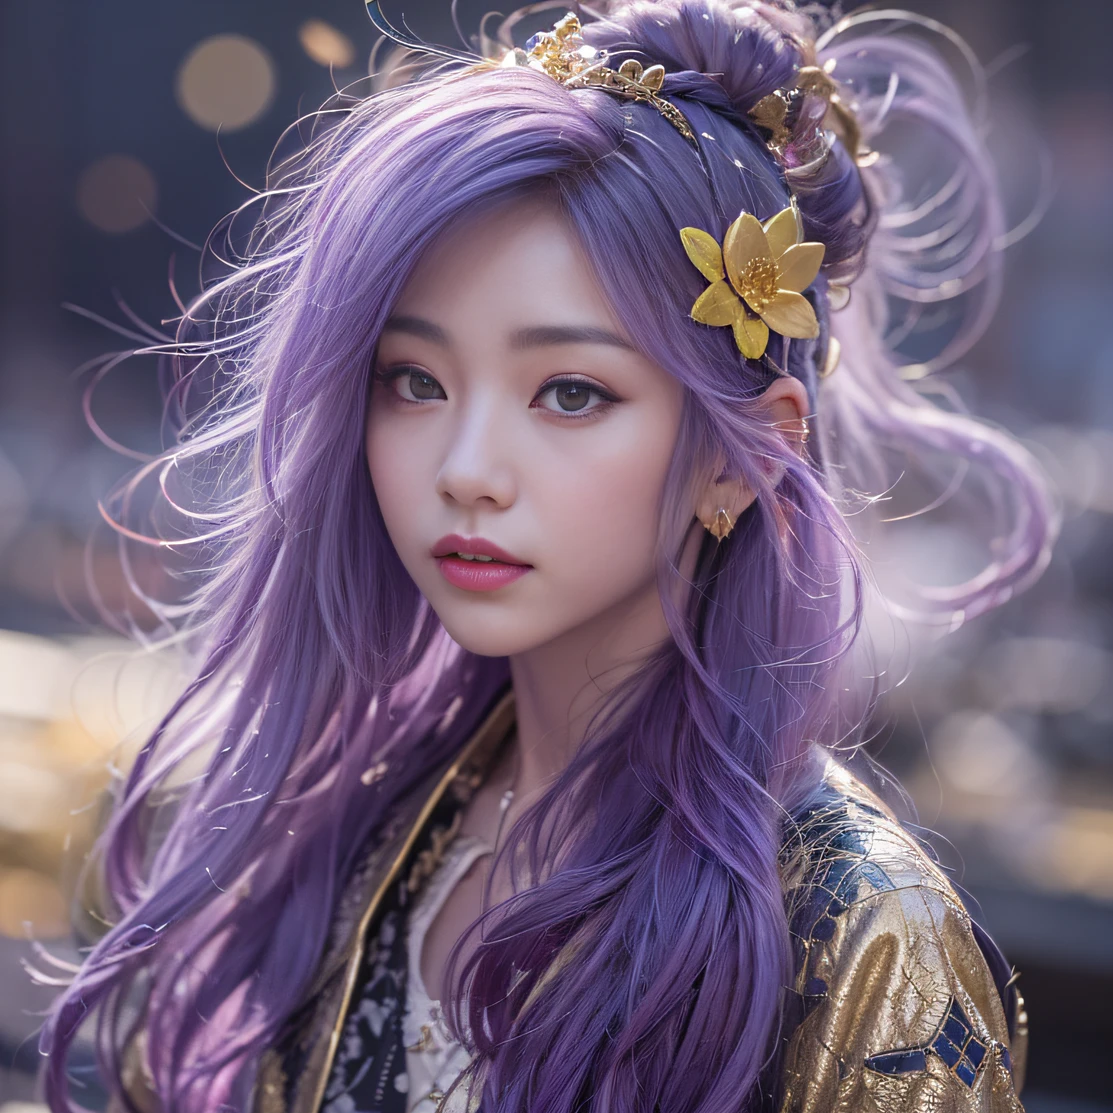 Genki Girl 32k（傑作，高畫質，超高畫質，32k）亮紫色長髮飄逸，秋天的池塘，盛开， 一种颜色， 亚洲人 （元氣少女）， （絲巾）， 战斗姿态， 看着地面， 長白髮， 漂浮的亮紫色， 火雲紋金色頭飾， 中國長袖金絲服裝， （抽像元宇宙飛濺：1.2）， 白色背景，蓮花元氣護身符（現實地：1.4），亮紫色的头发，路上冒煙，背景很純淨， 高解析度， 细节， RAW 照片， 夏普再保险， 尼康 D850 膠卷照片由 Jefferies Lee 拍攝 4 柯達 Portra 400 相機 F1.6 枪, 丰富的色彩, 超逼真生動的紋理, 戲劇性的燈光, 虛幻引擎藝術站趨勢, 西奈斯特800，一個有著長長飄逸亮紫色頭髮的女孩